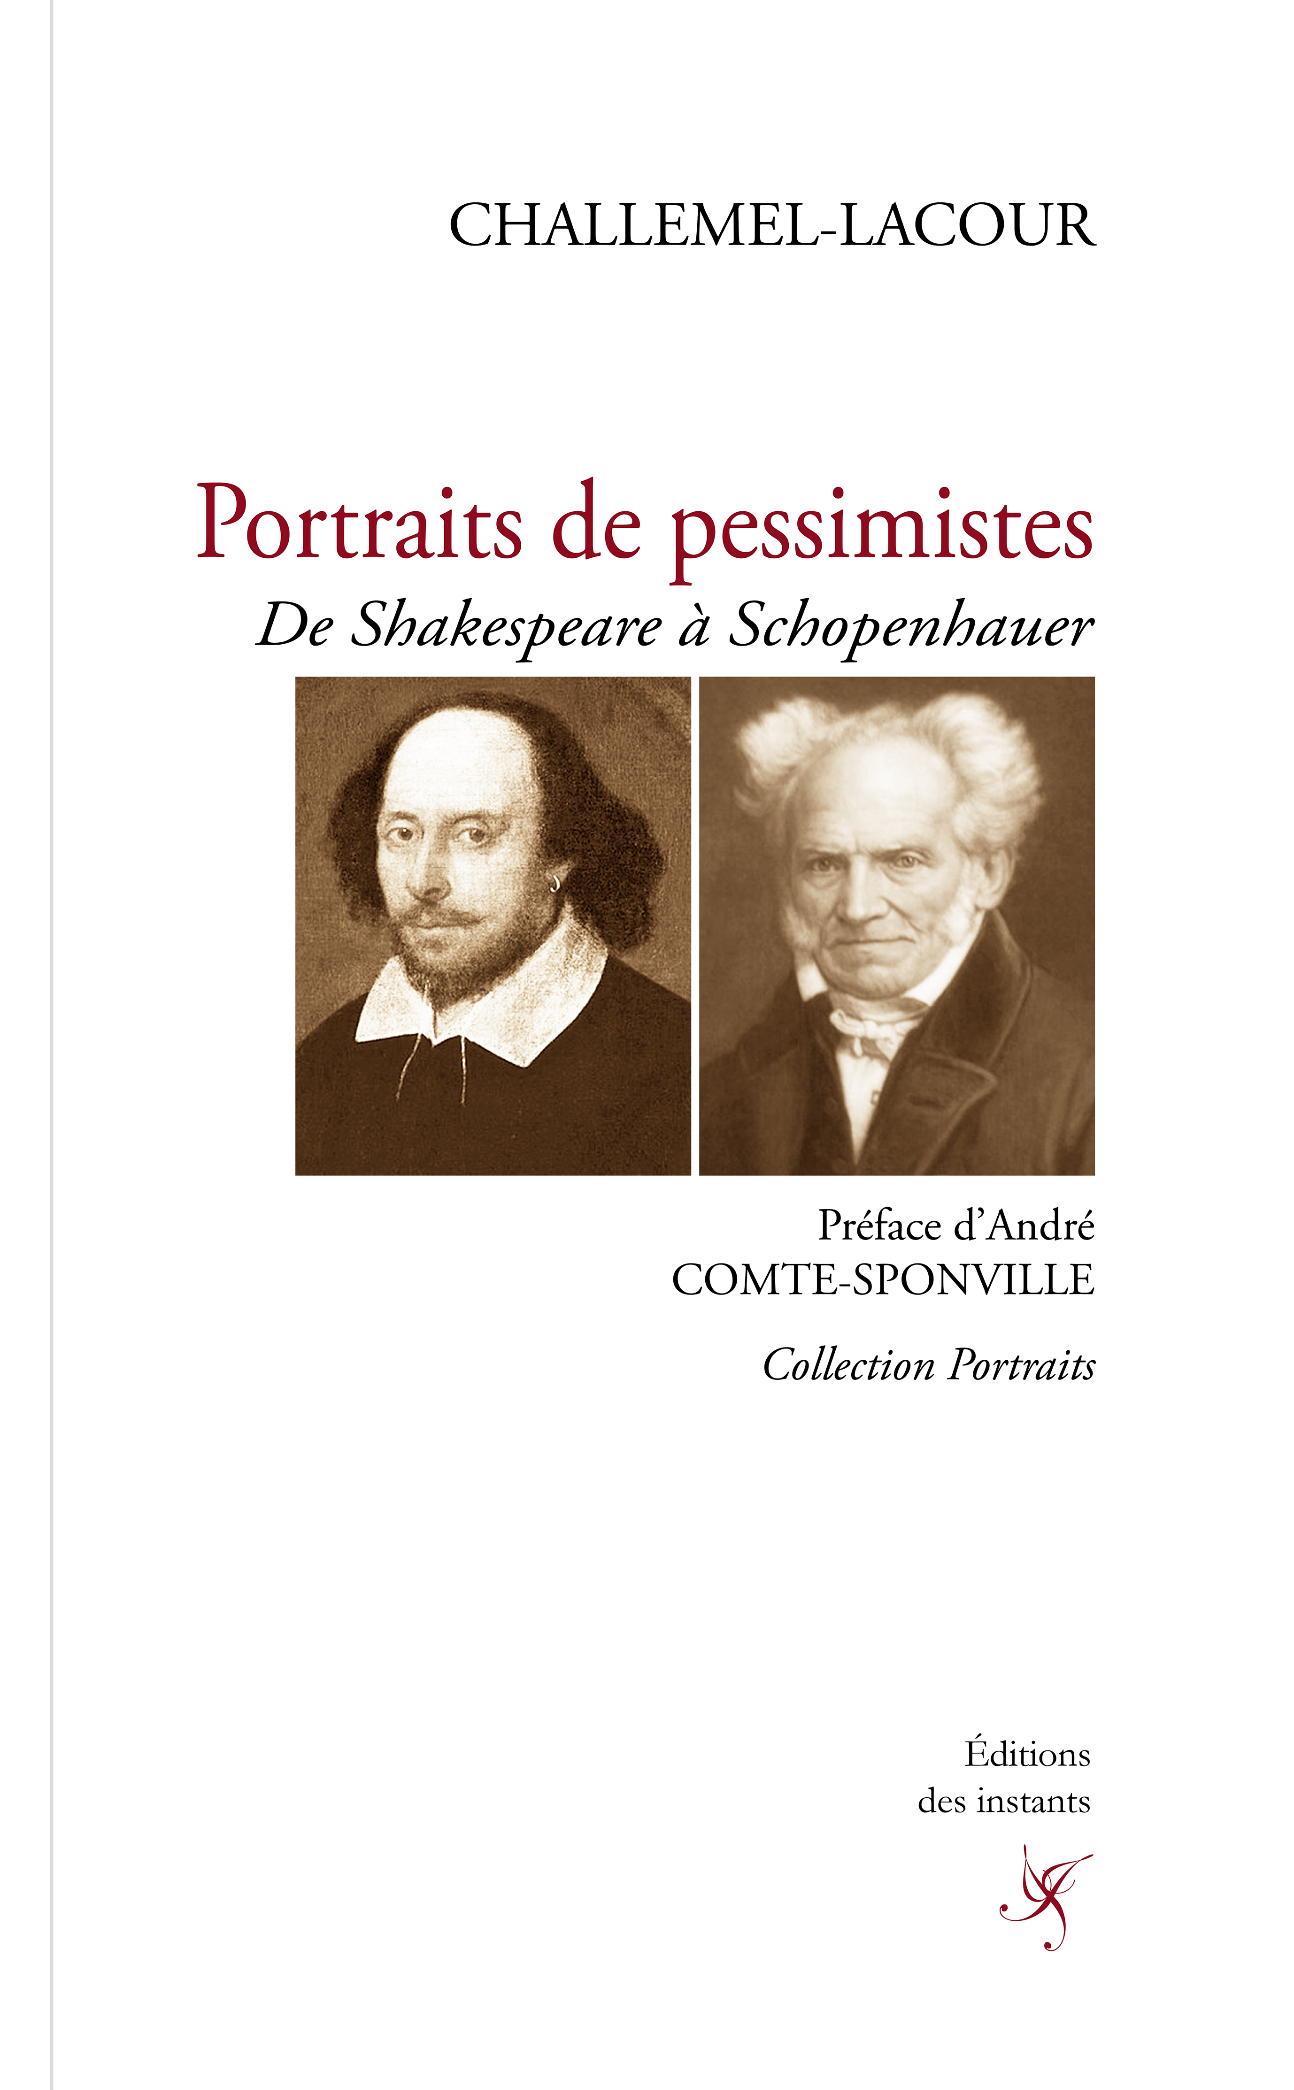 P.A. Challemel-Lacour, Portraits de pessimistes. De Shakespeare à Schopenhauer